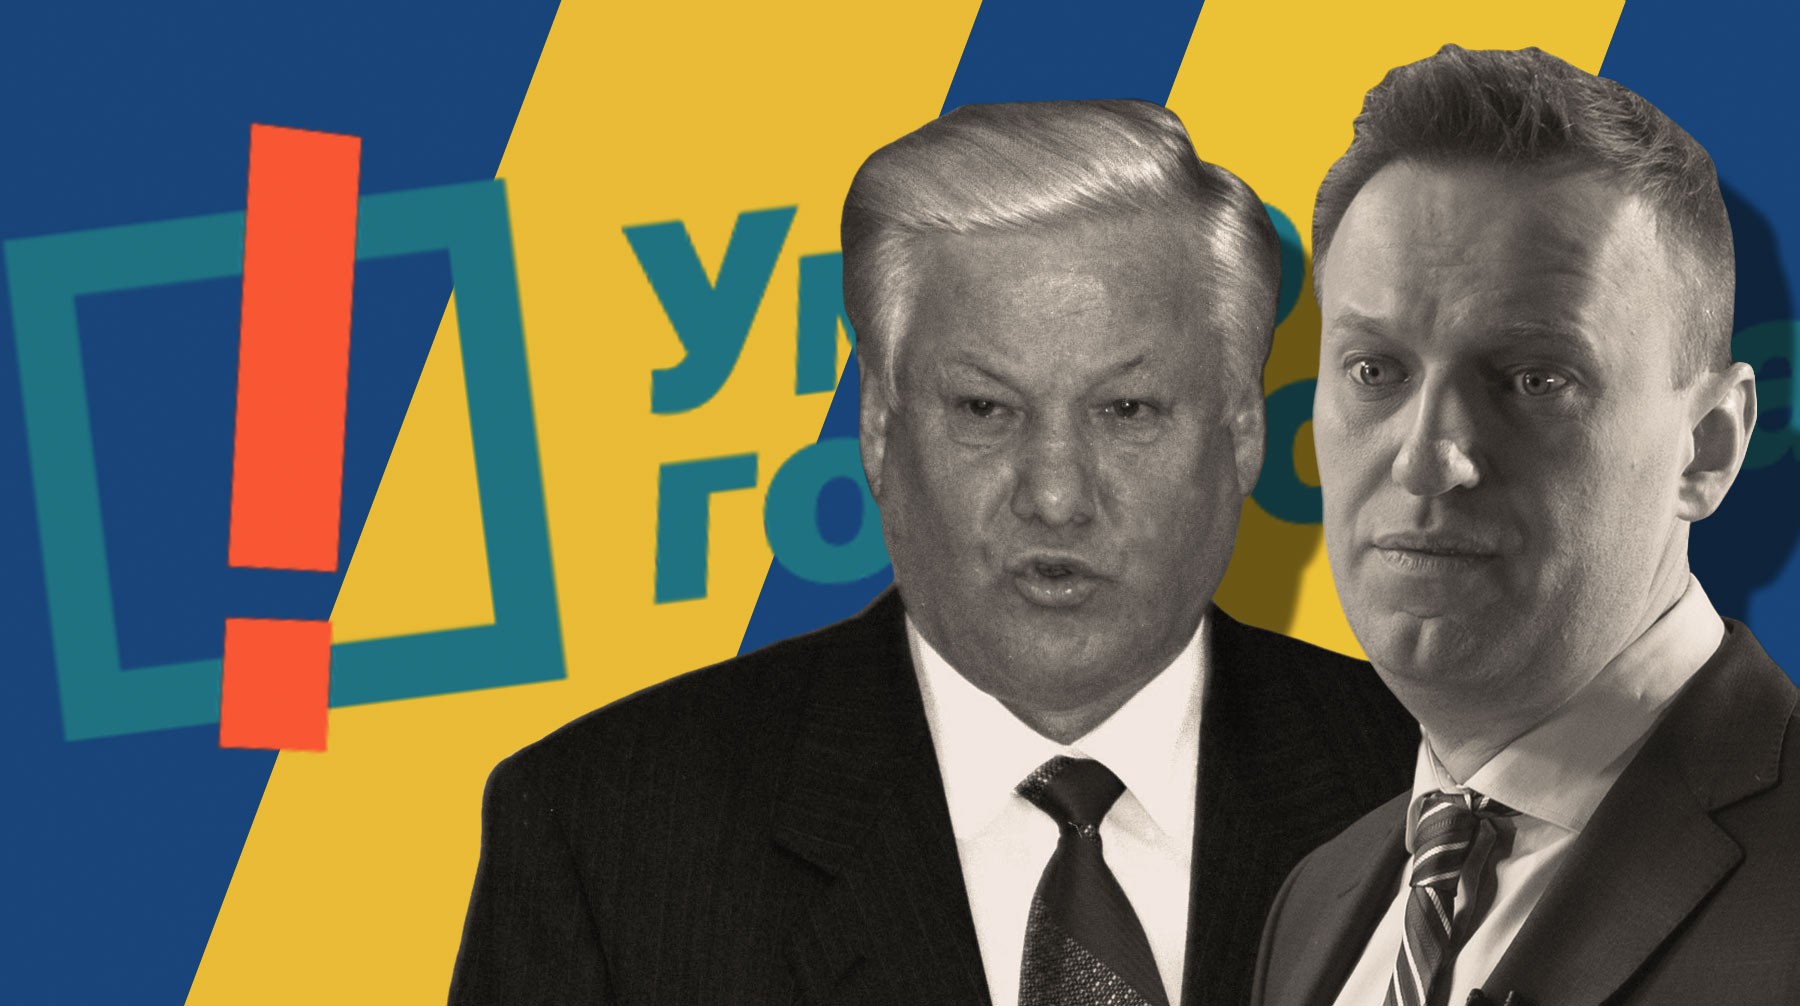 Dailystorm - Ельцин проголосовал бы за себя: соратники первого президента России оценили «Умное голосование»